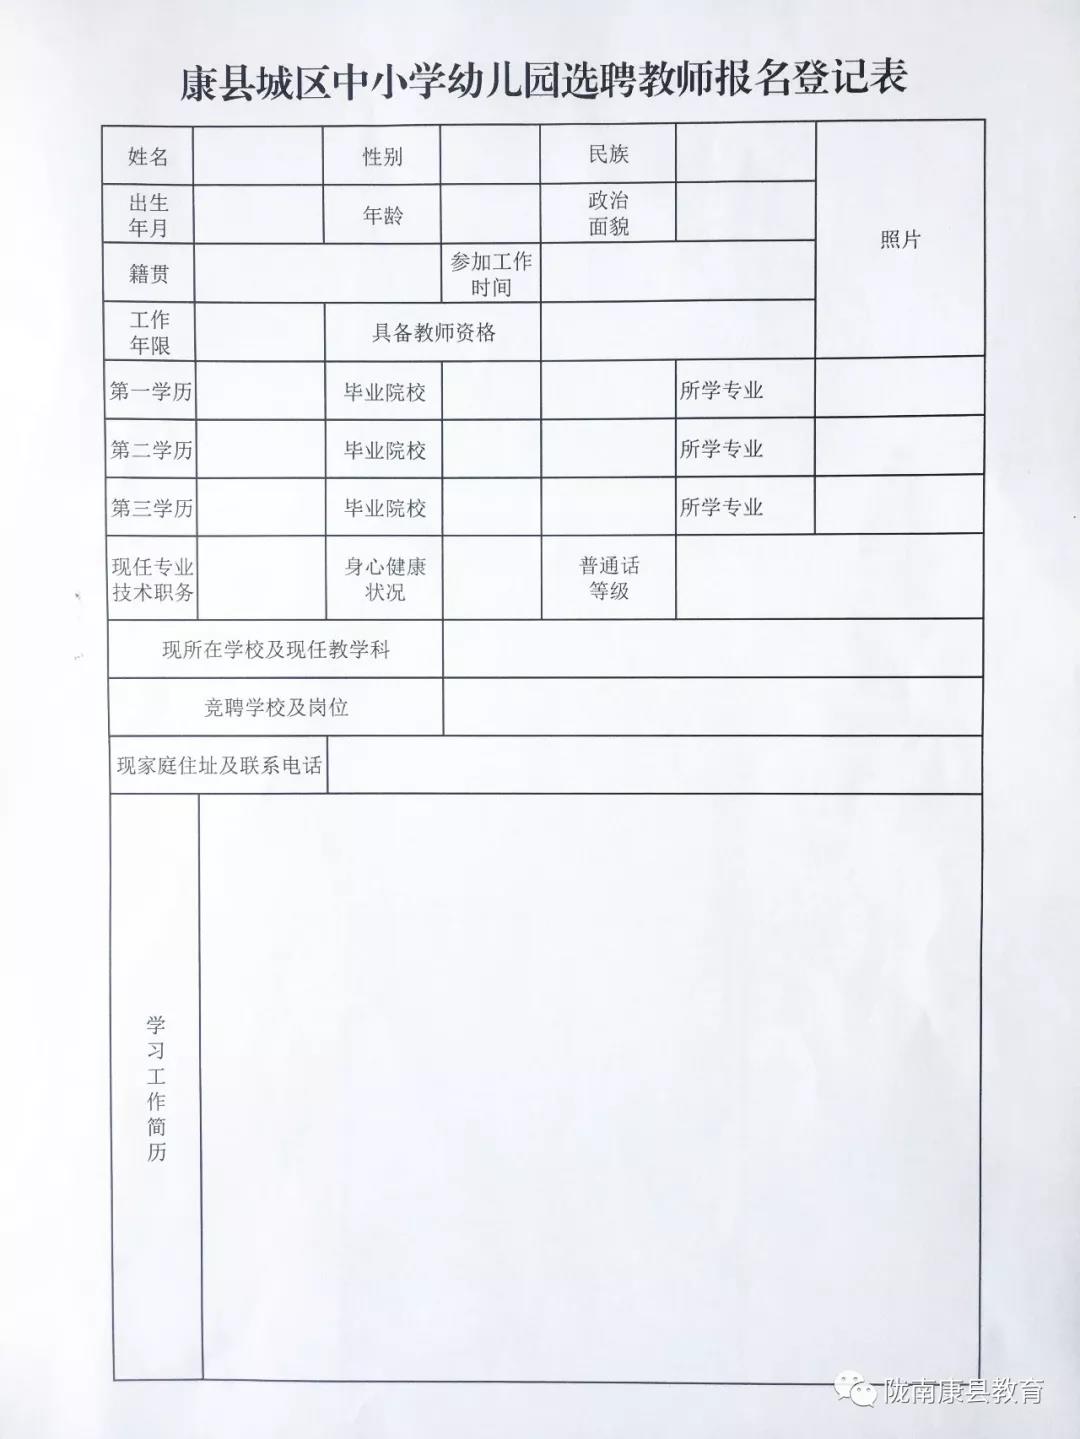 甘肃康县城区2019年部分选聘教师31人通知